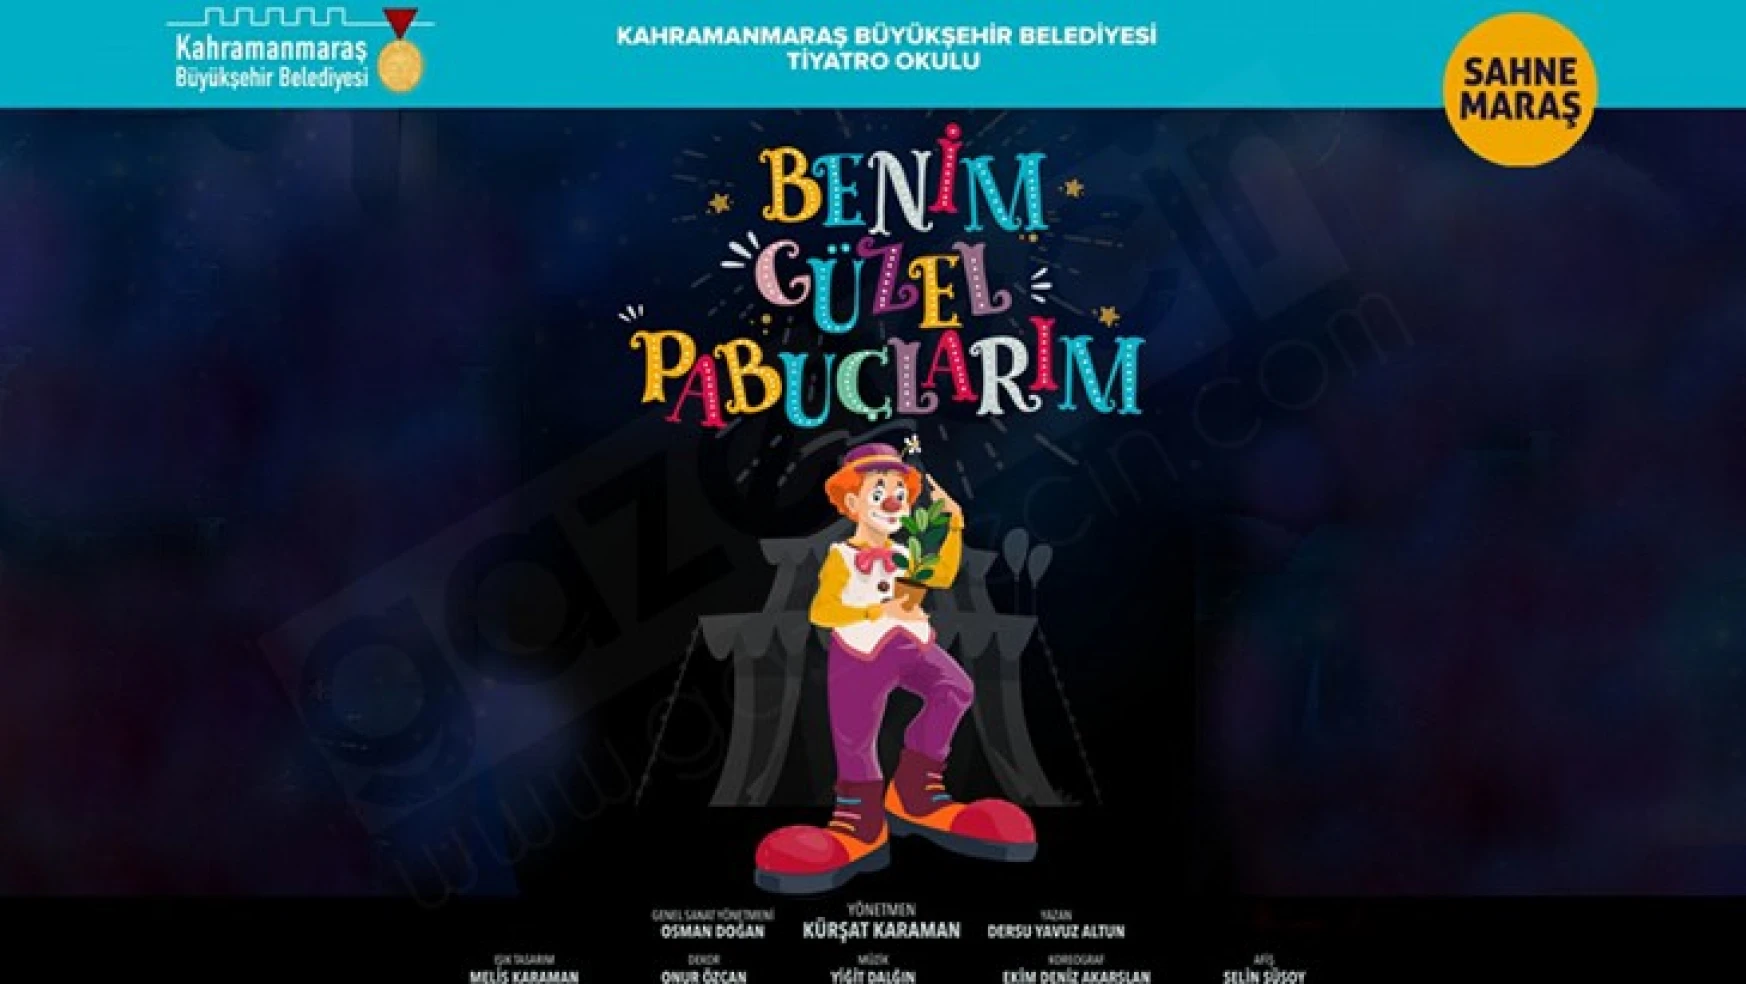 Kahramanmaraş'ta 'Benim Güzel Pabuçlarım' adlı çocuk oyunu sahneleyecek